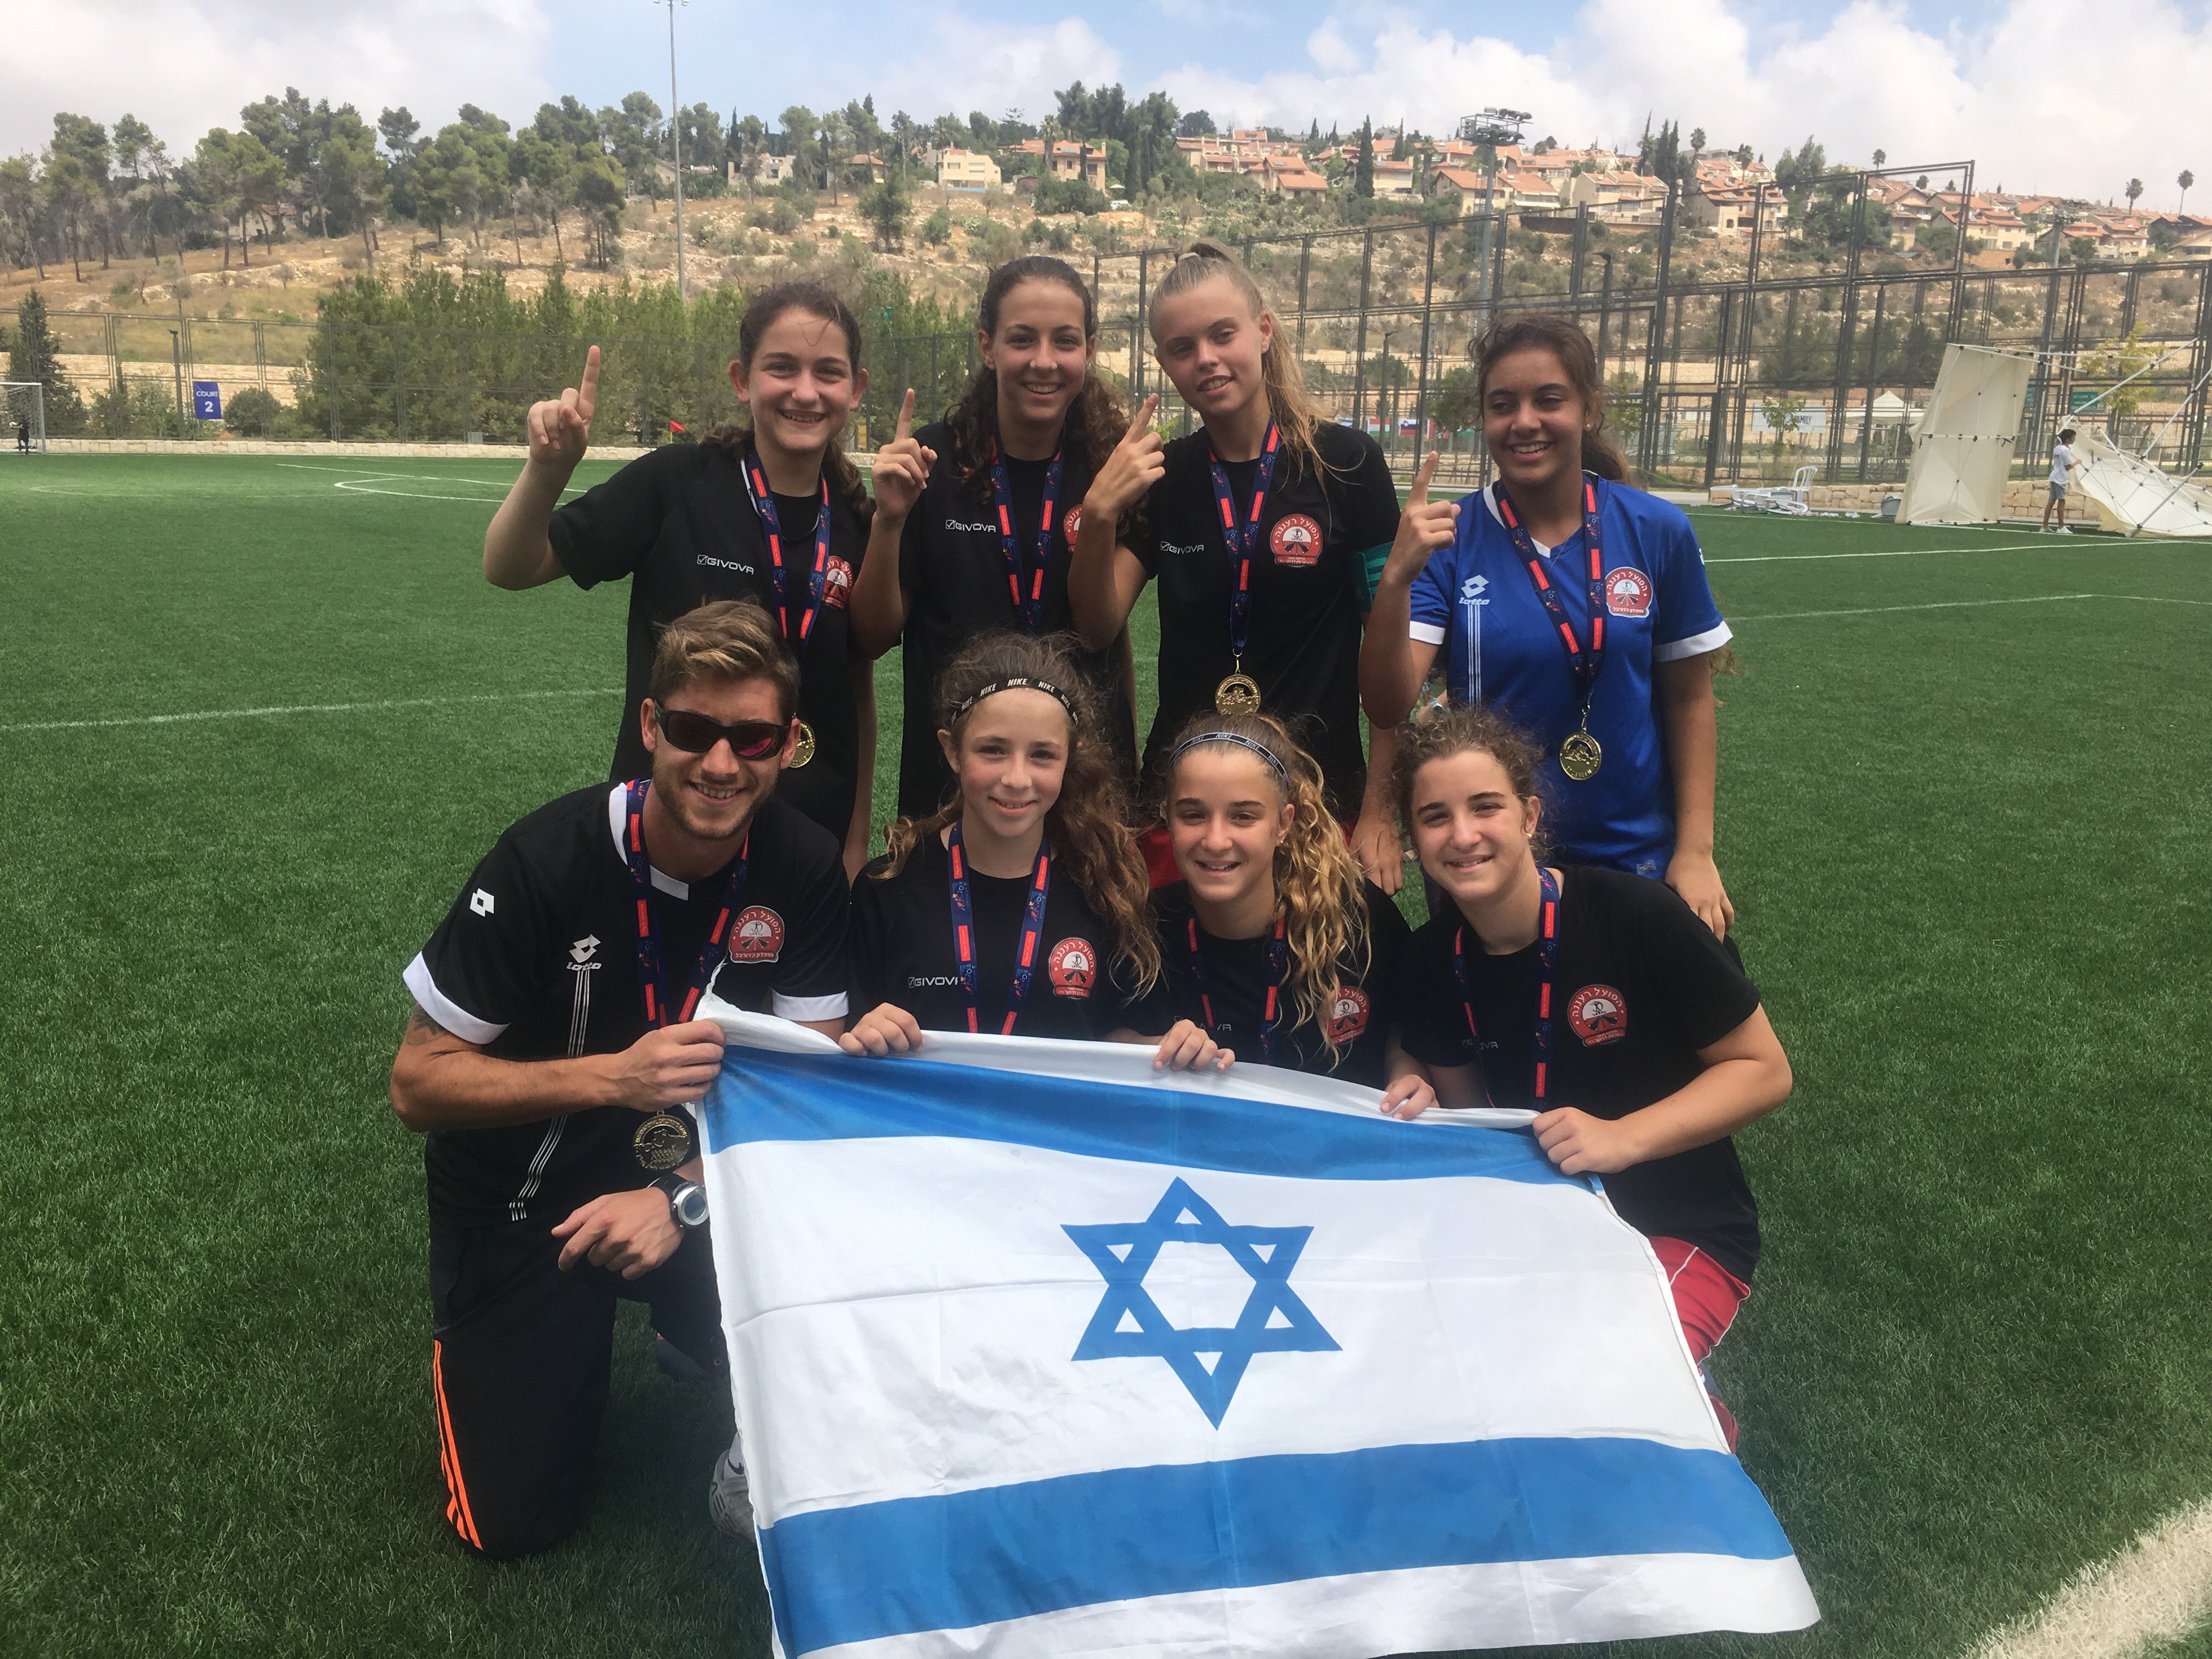 הישגים למשלחת רעננה במשחקים הבינלאומיים לילדים ICG שהתקיימו השנה לראשונה בירושלים